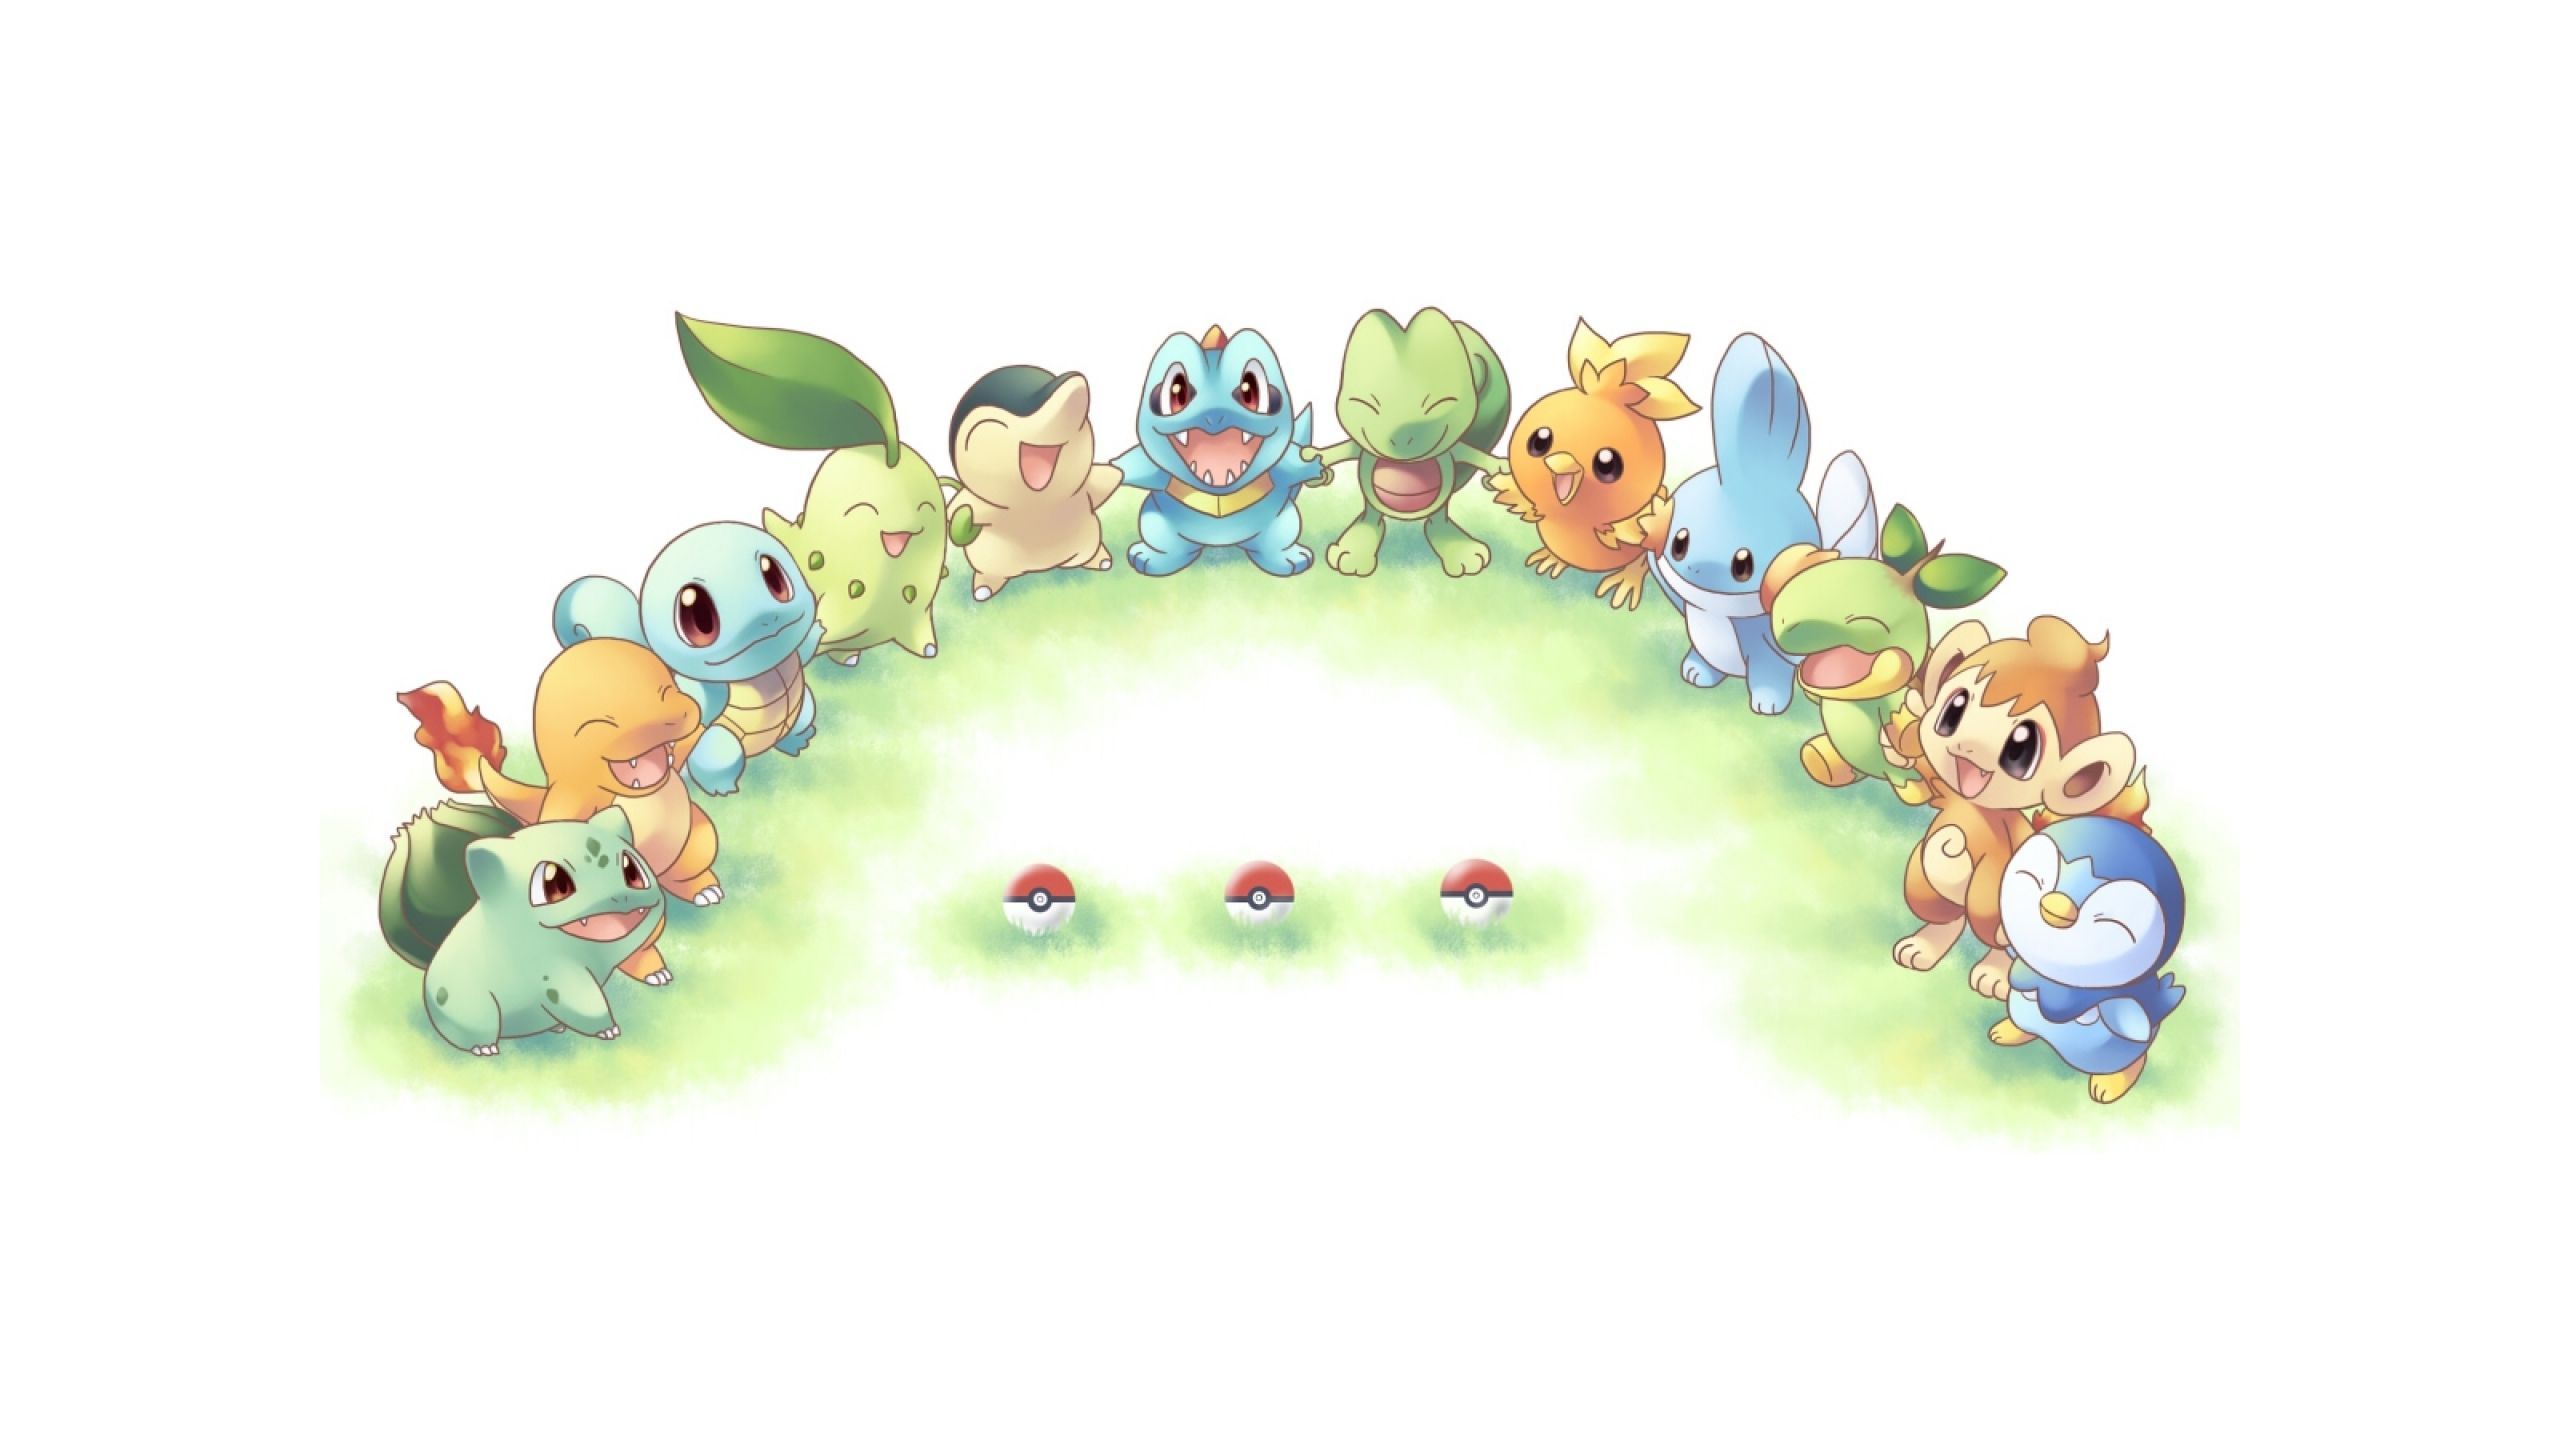 Pokemon Starters wallpaper. Cute pokemon wallpaper, Cute pokemon, Pokemon background